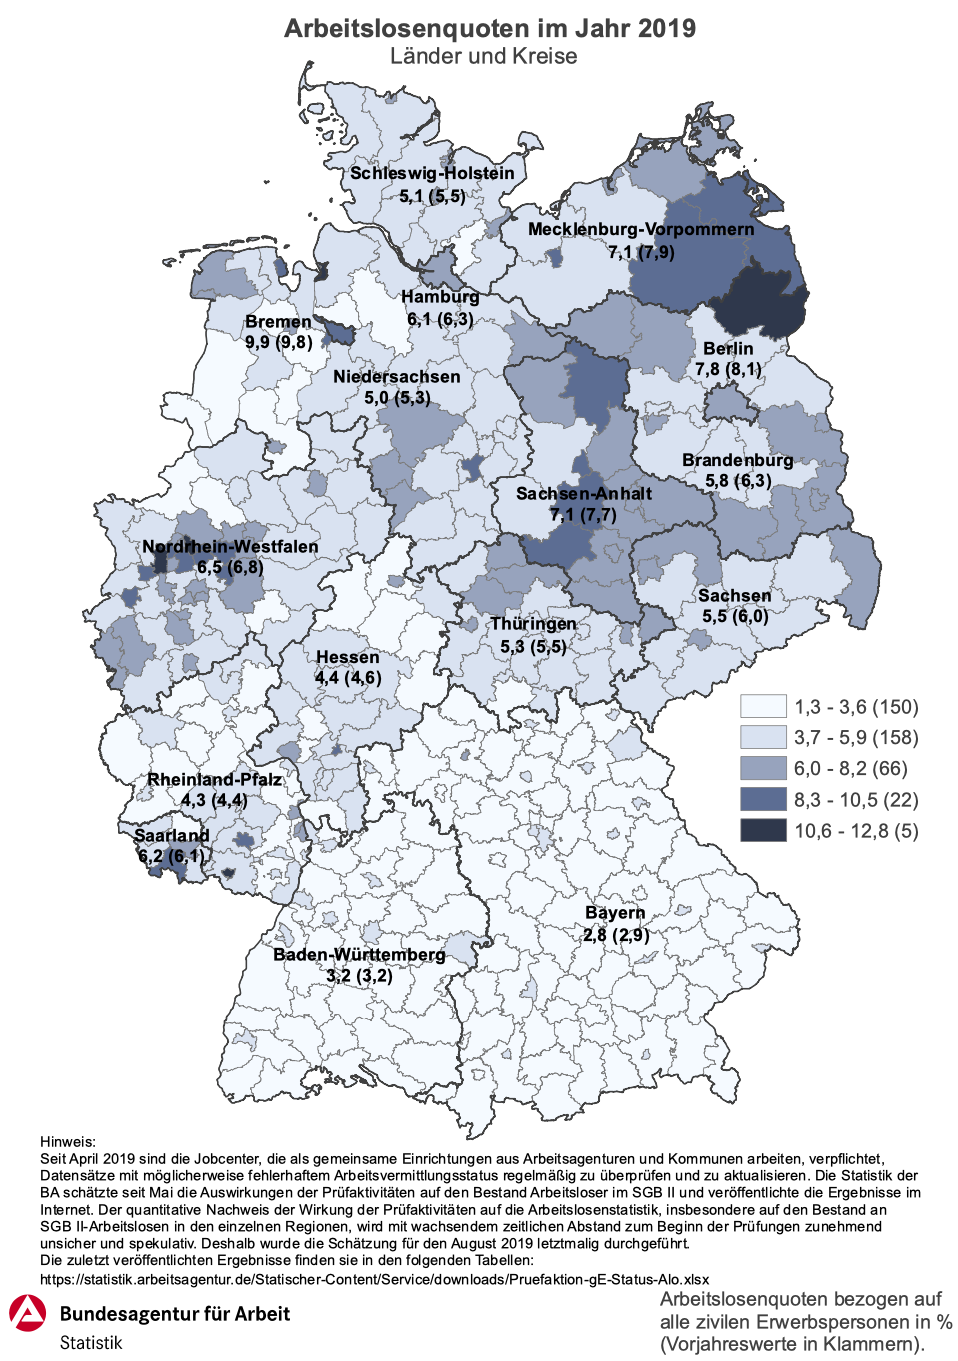 Arbeitslosenquoten 2019 - Länder und Kreise in Deutschland